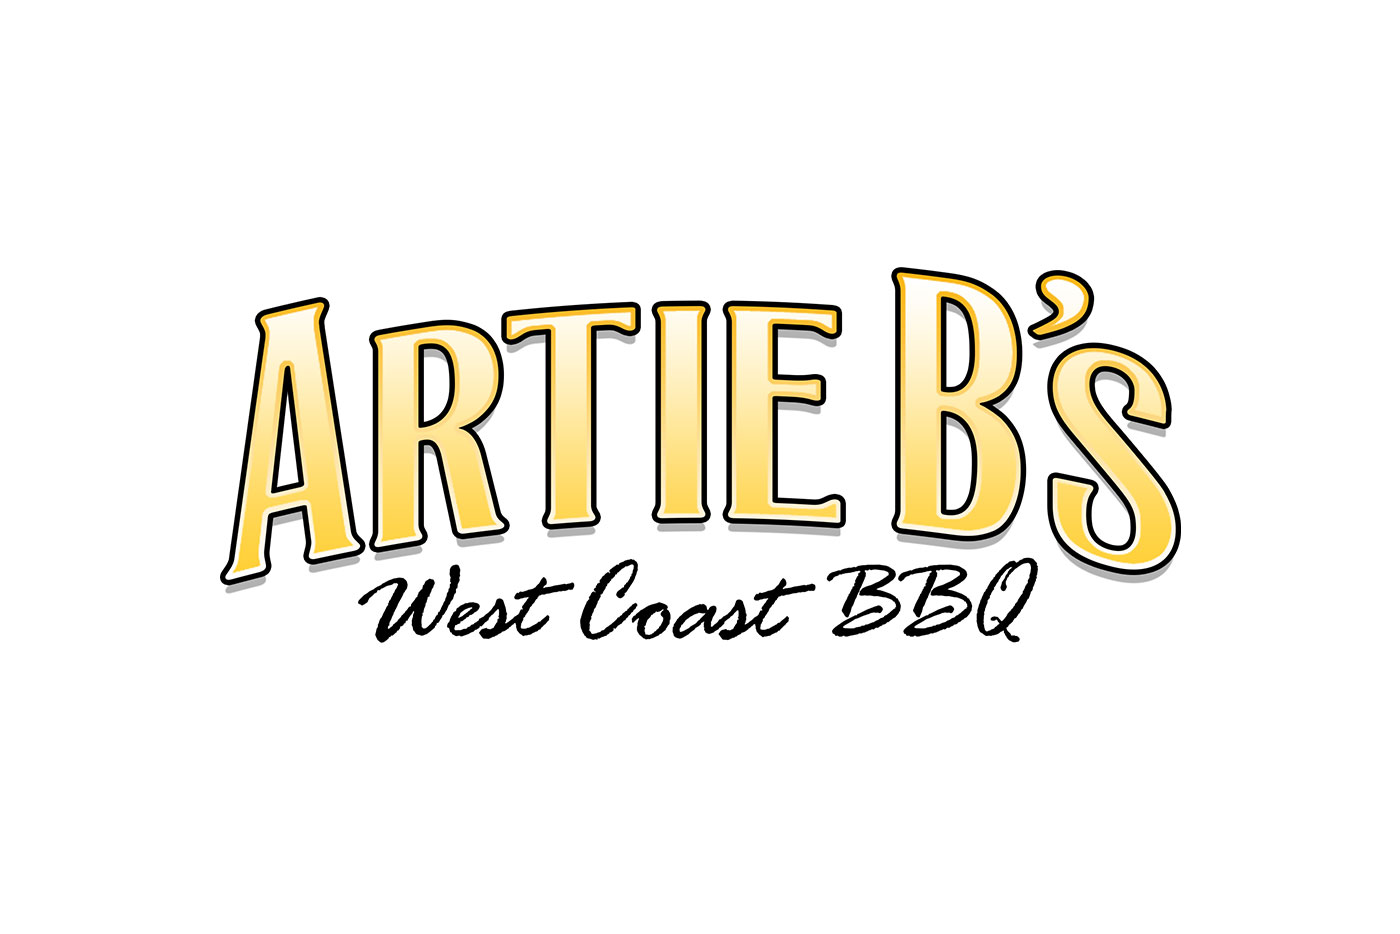 Artie B’s West Coast BBQ